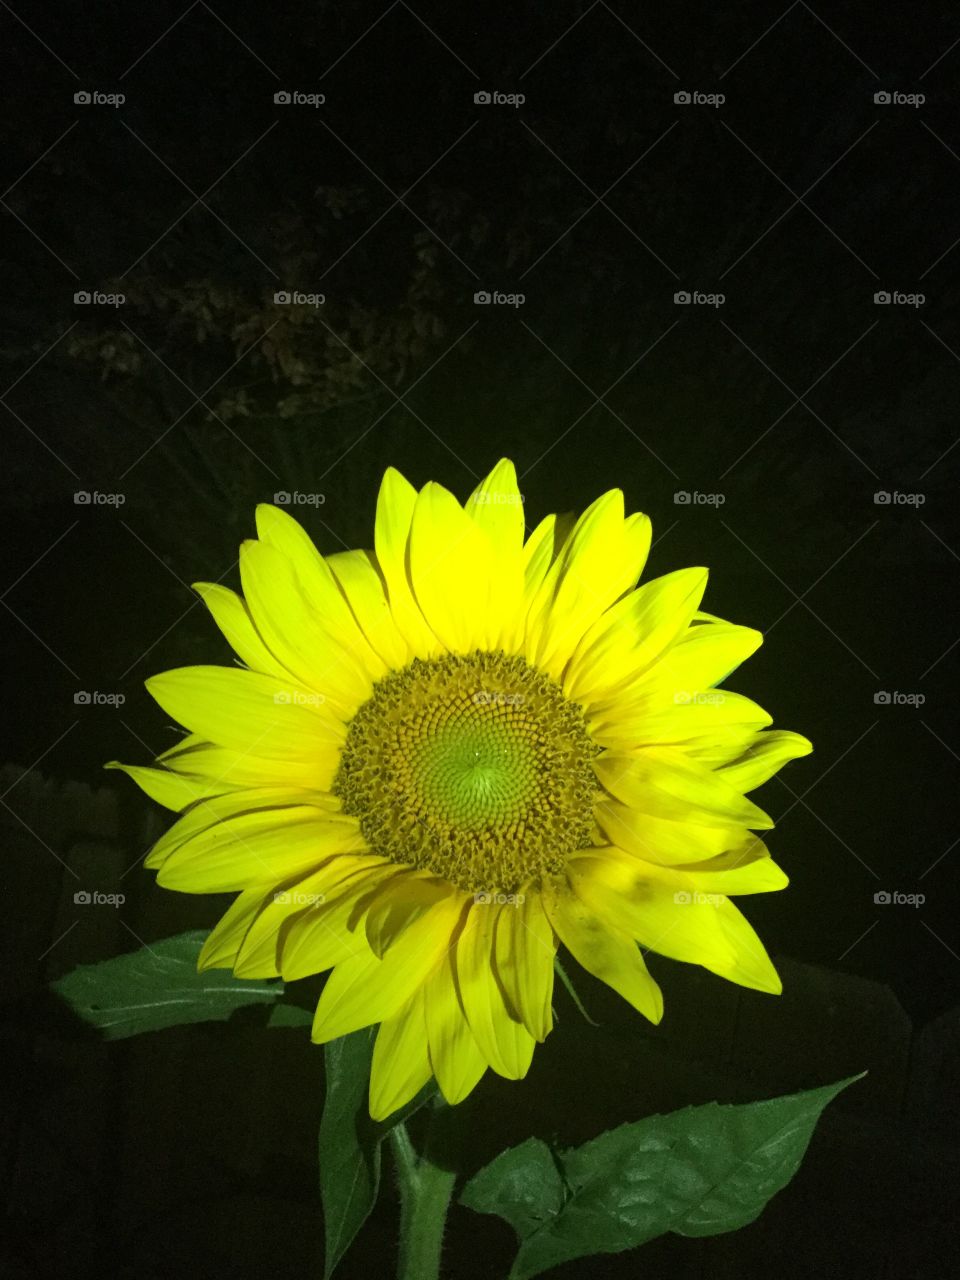 Beautiful summer-time sunflower 